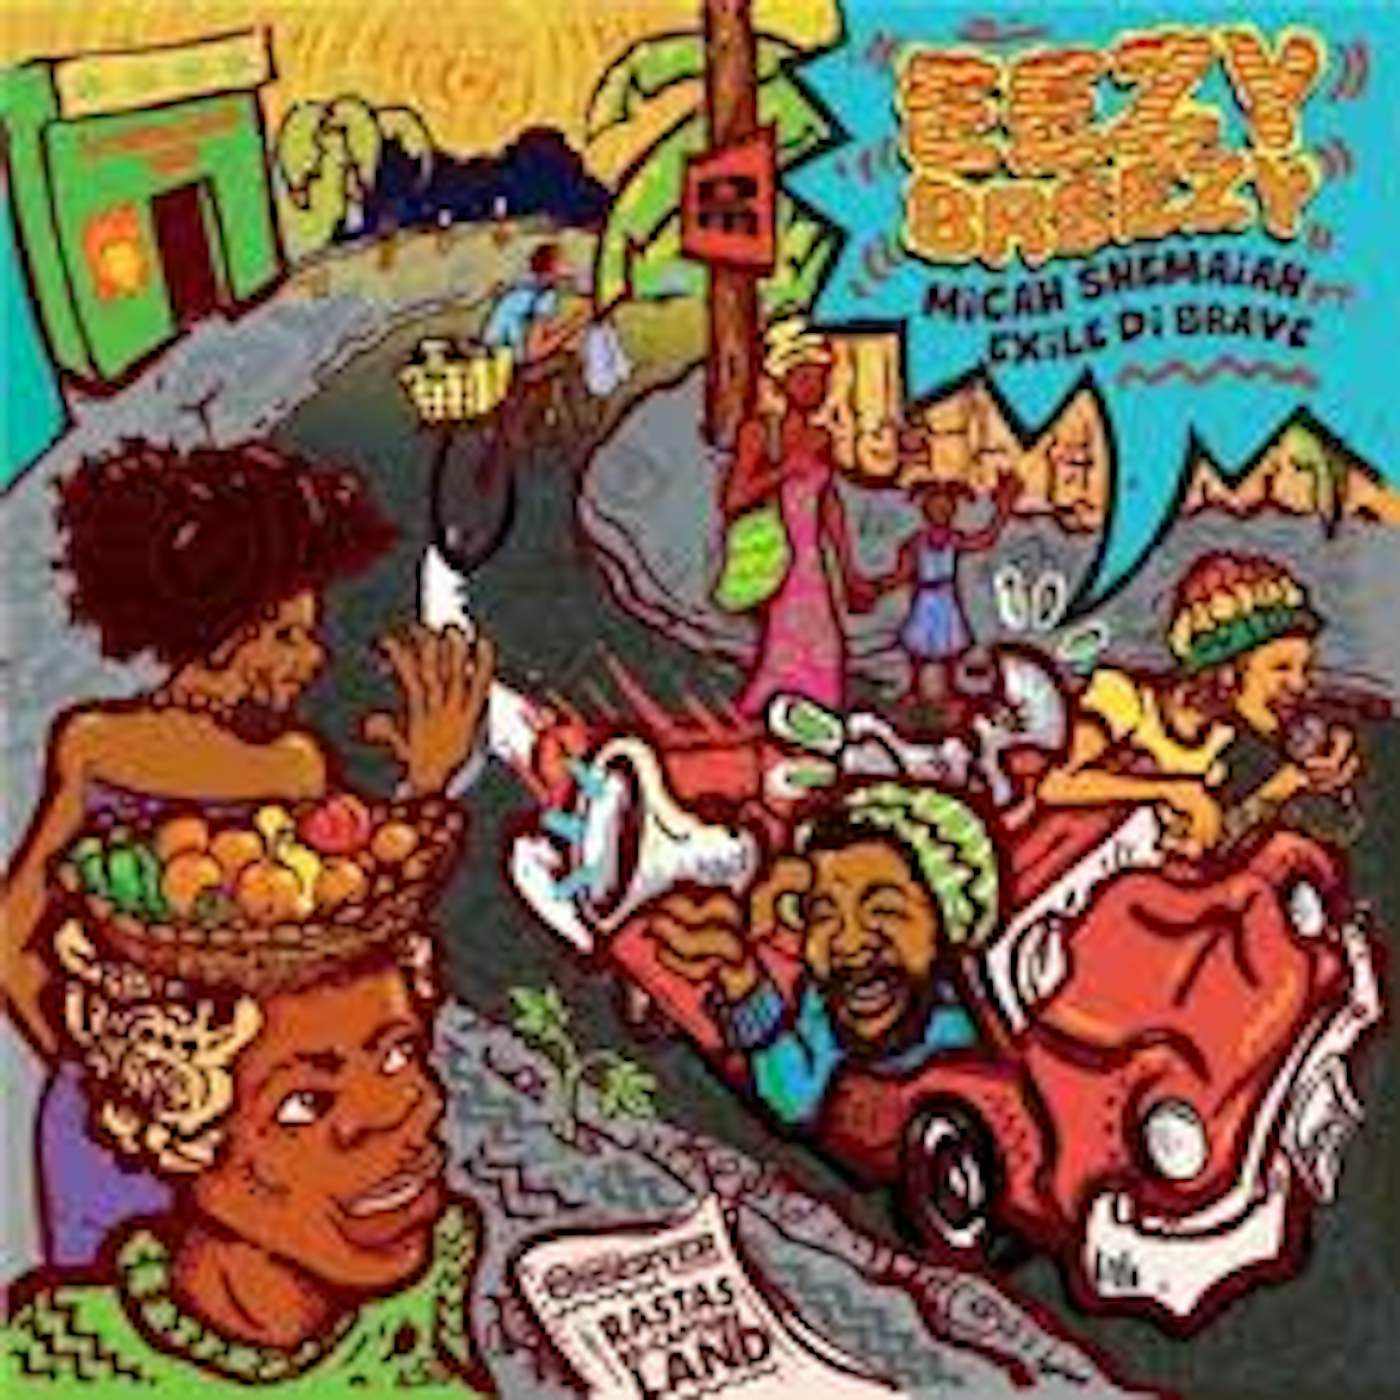 Micah Shemaiah EEZY BEEZY FEAT EXILE DE BRAVE Vinyl Record